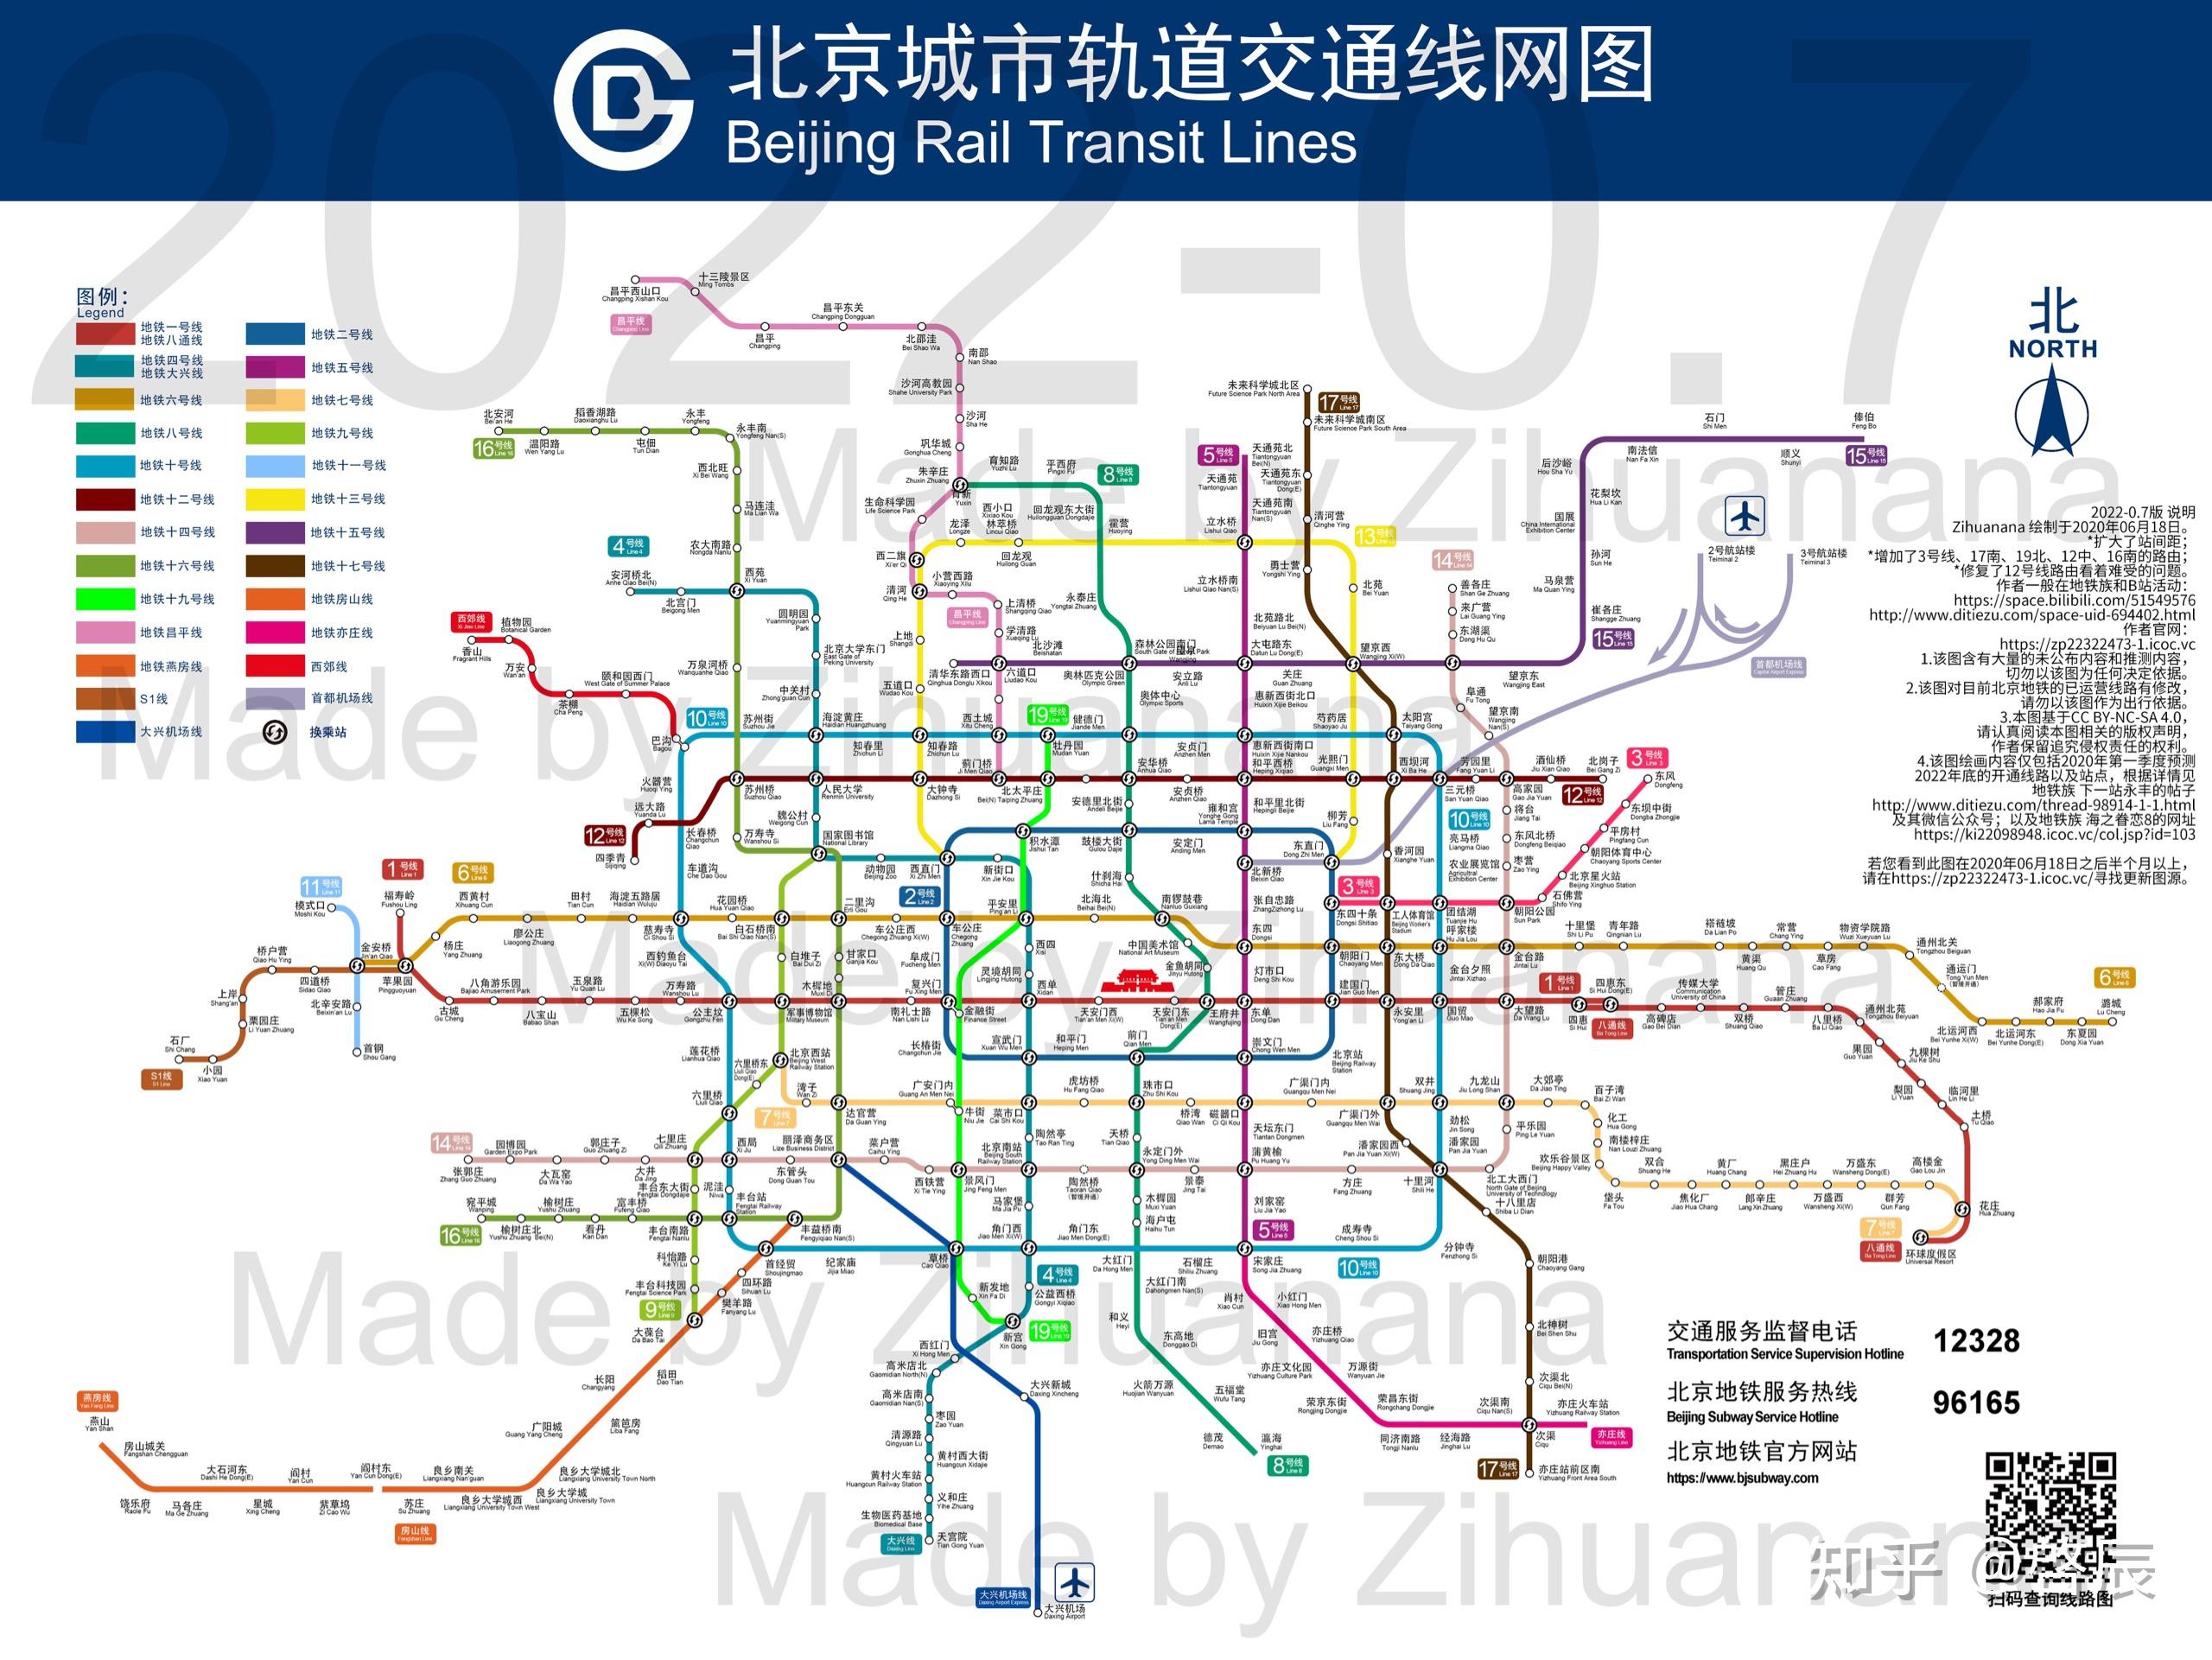 地铁四号线,是北京轨道交通路网中一条贯穿市区南北的主干线,该线于